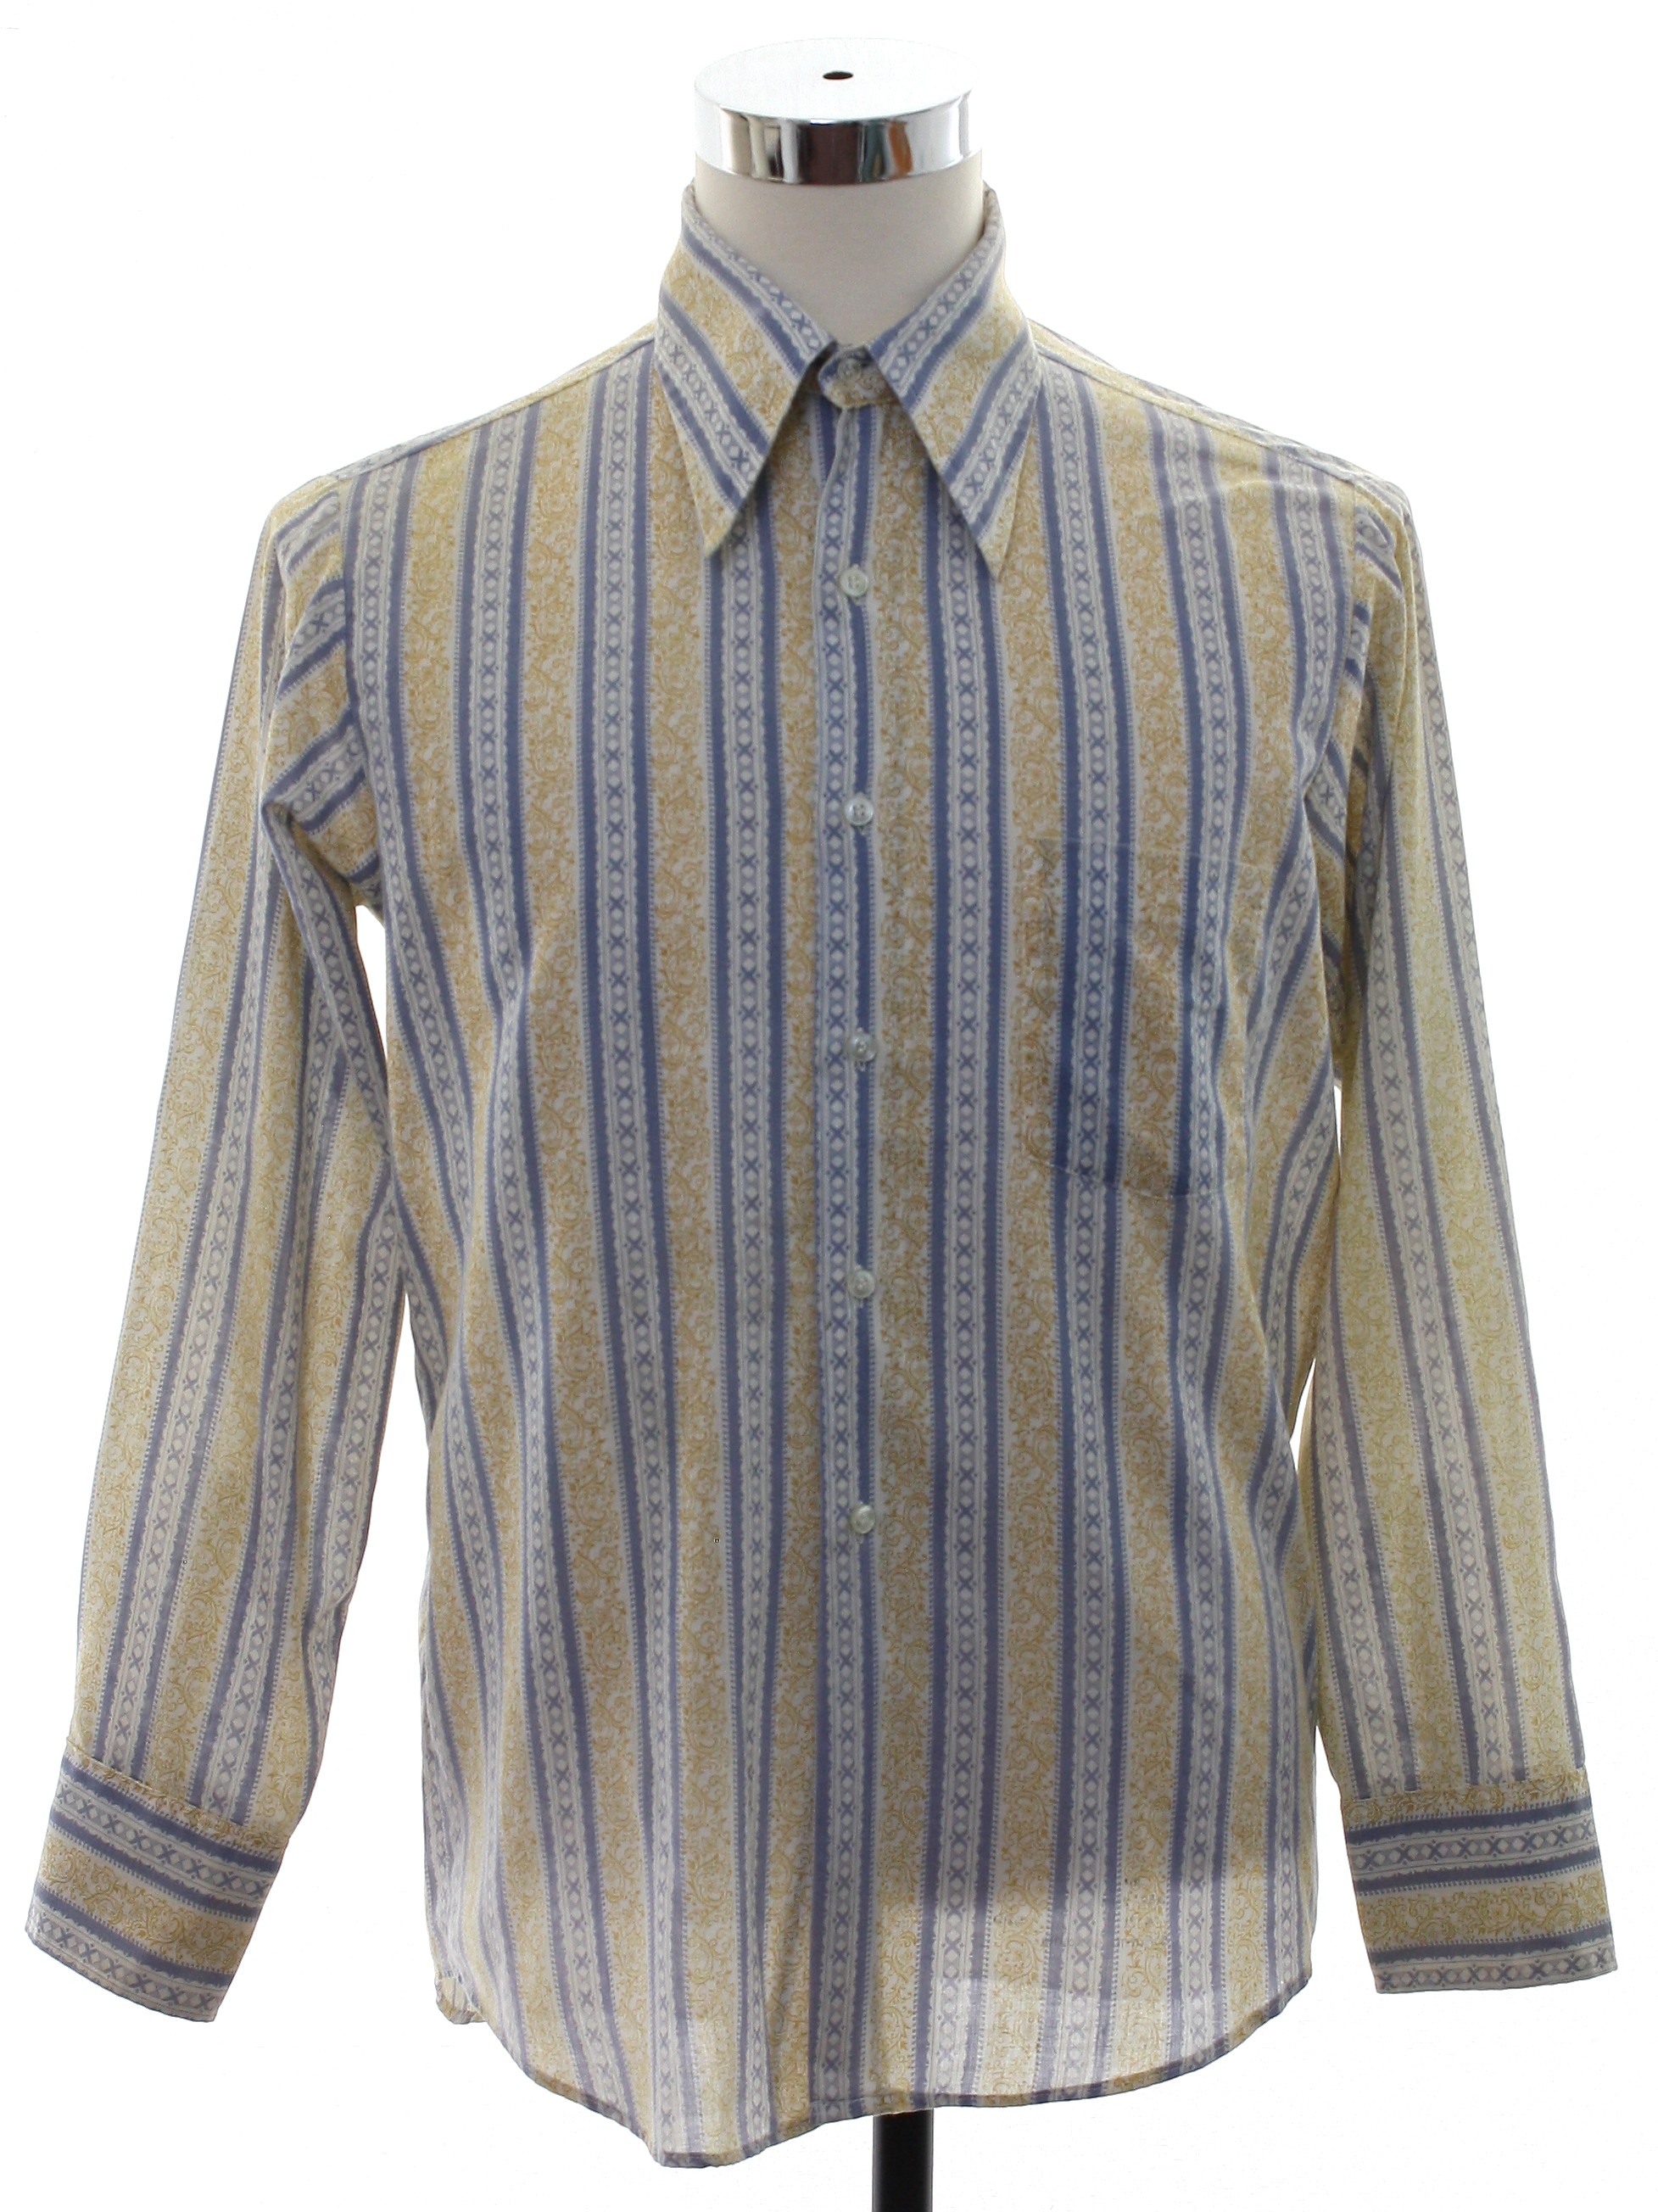 Hutspah Men's Shirt Striped Button Down Vintage Yellow / Gray Cotton L 80s